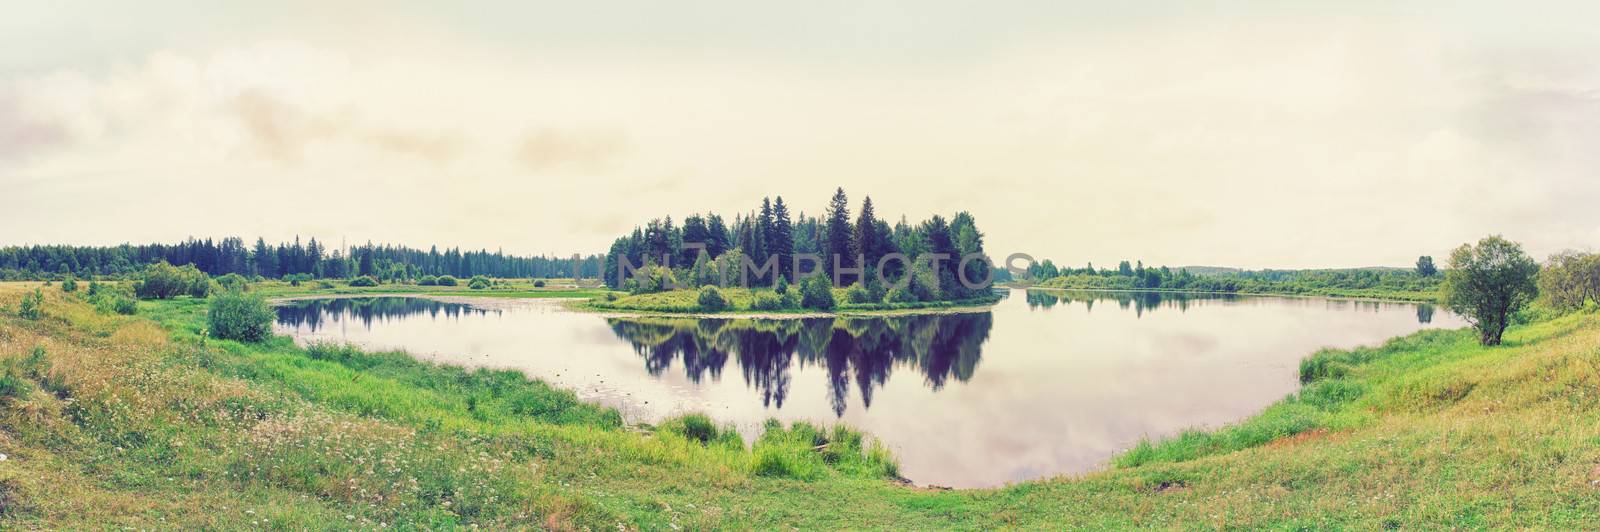 beautiful lake by vicnt